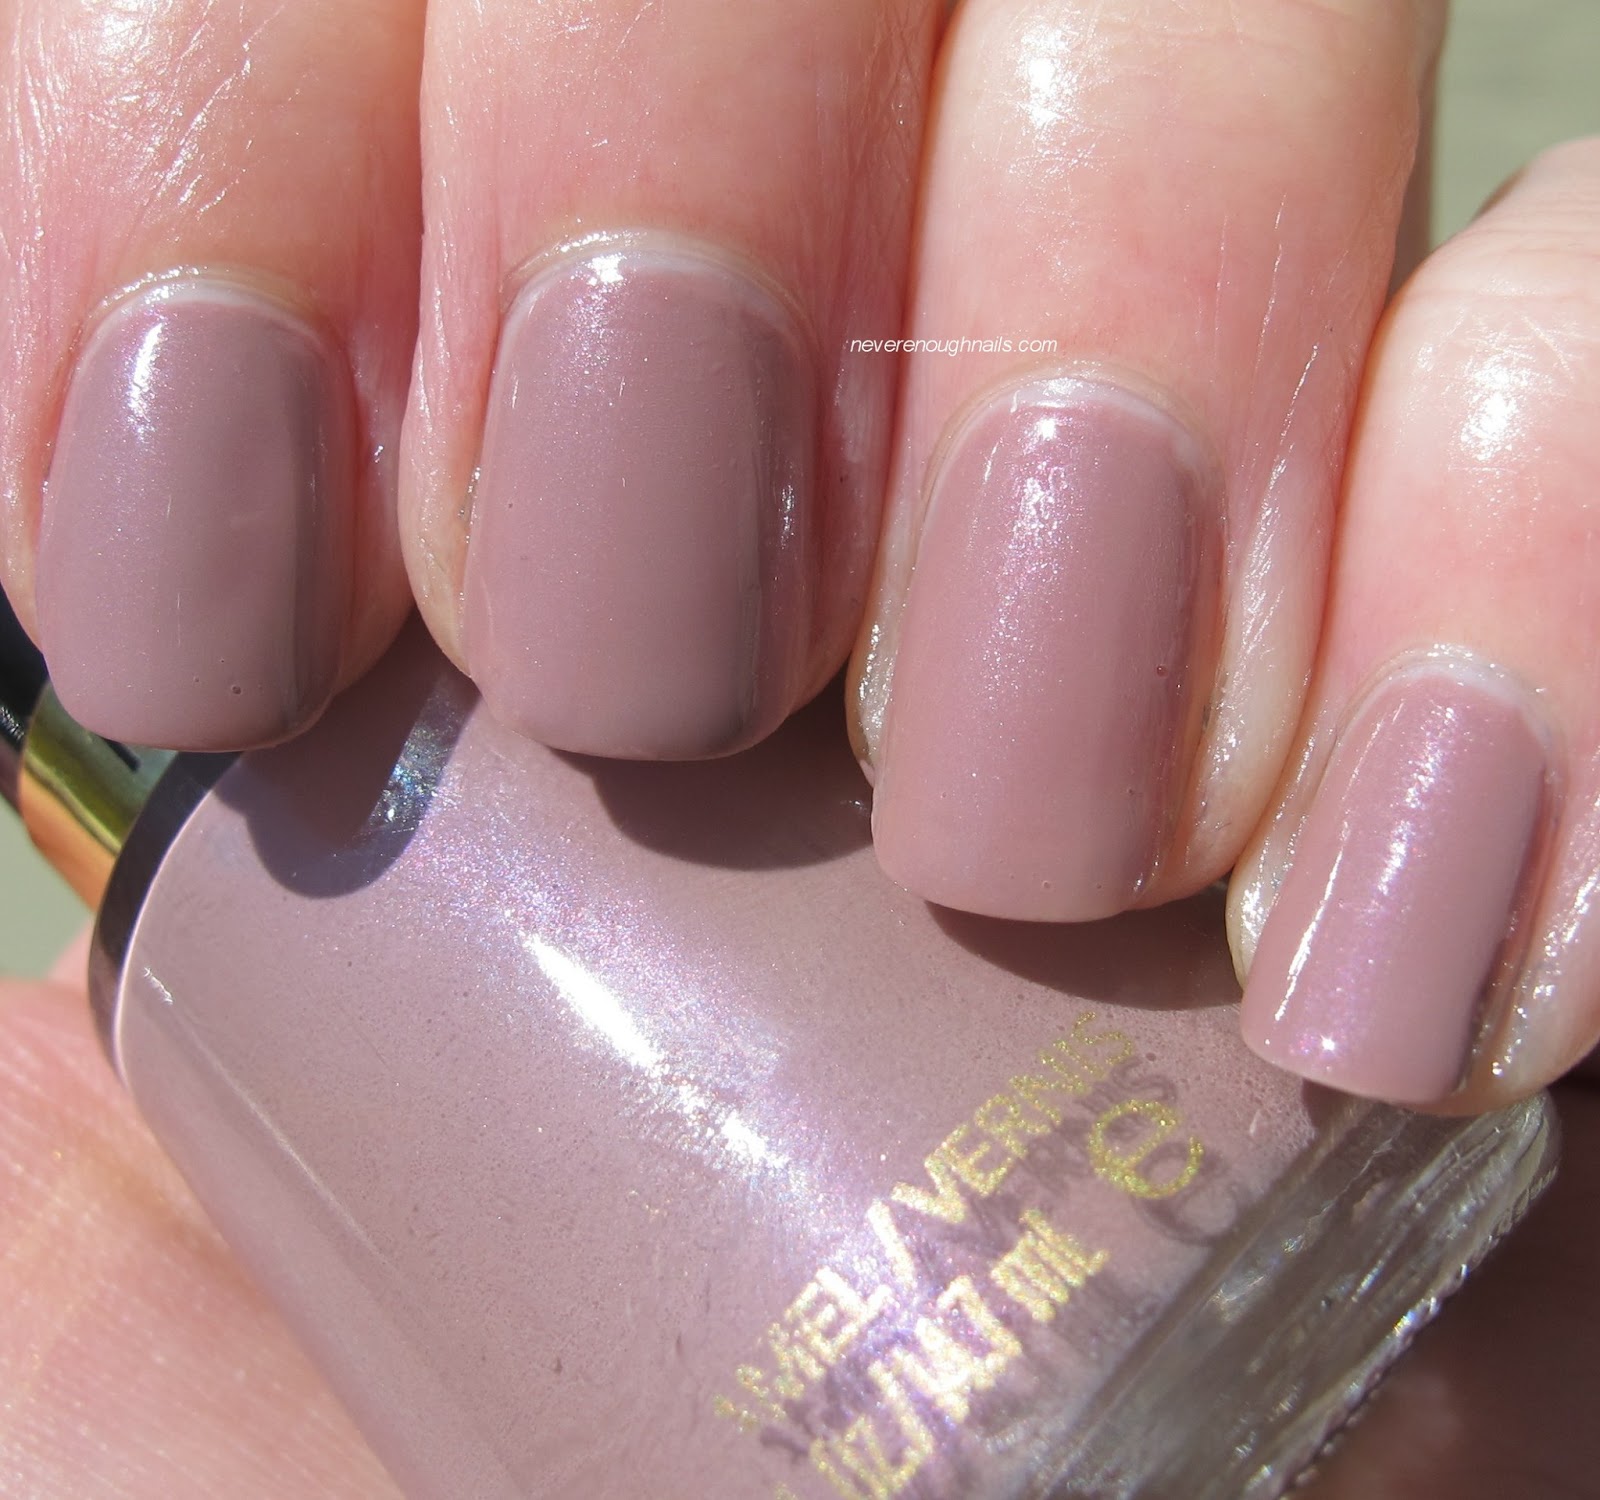 Revlon nail polish in Pink Chiffon. #protectinghair | Work nails, Nail  polish, Nails